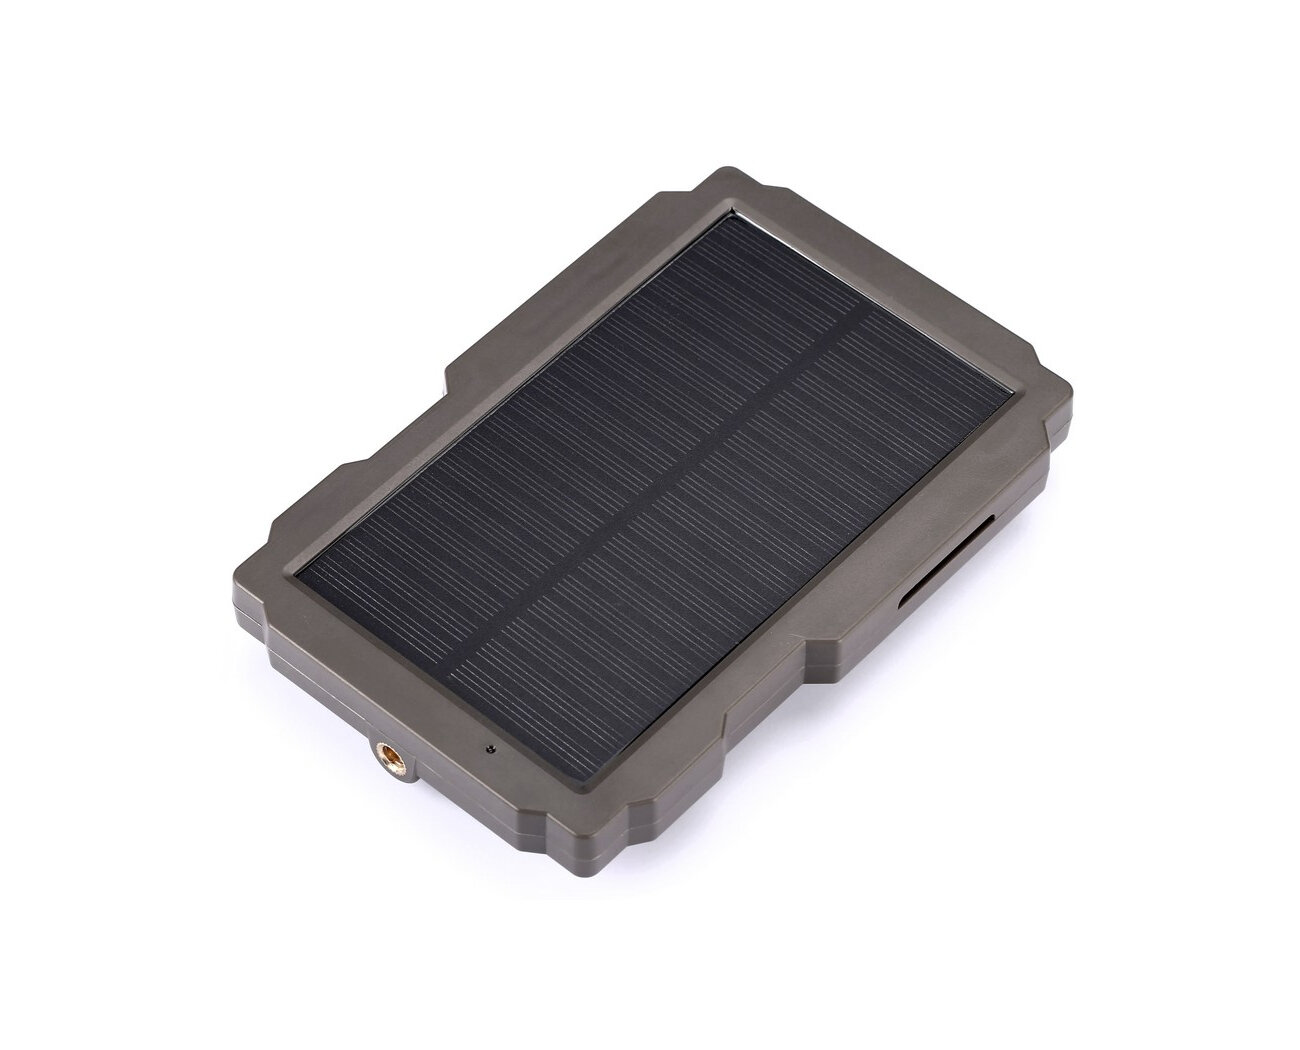 СП08-Дуал (Оригинал) (C908880PS) - солнечная панель для фотоловушки (выходное напряжение - 6 и 12 В встроенный аккумулятор на 3000 мАч)